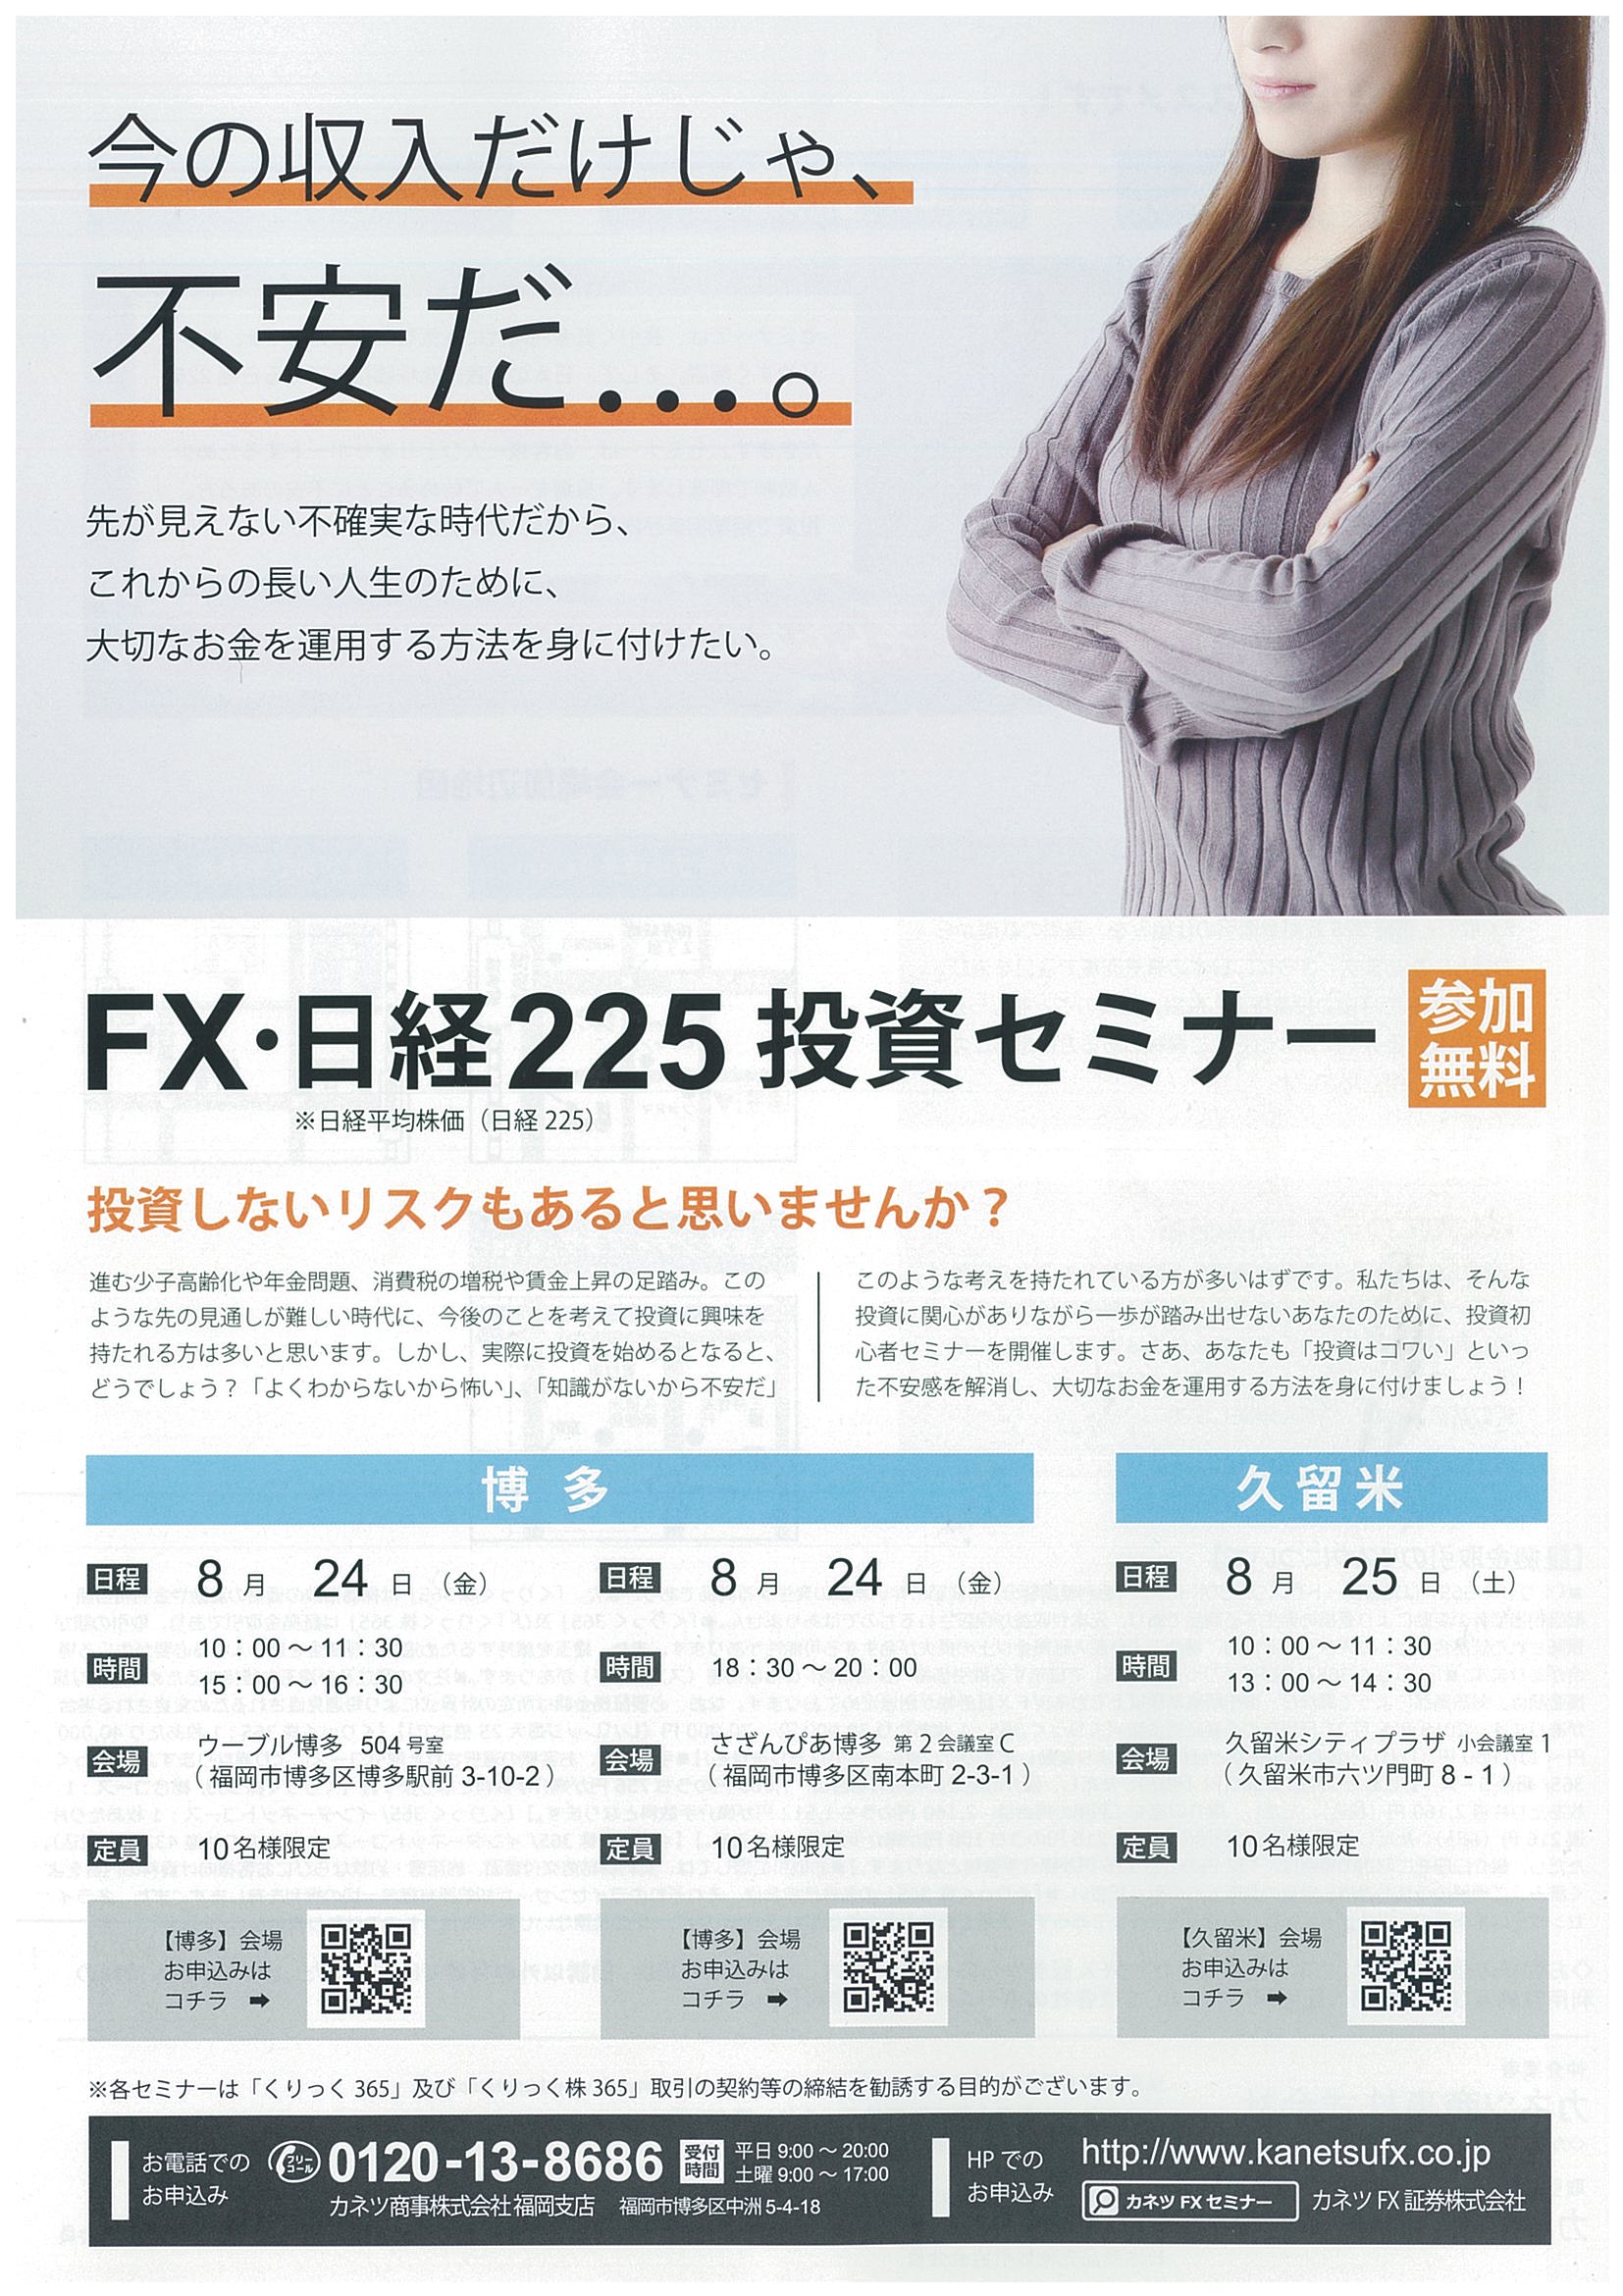 FX・日経225投資セミナー